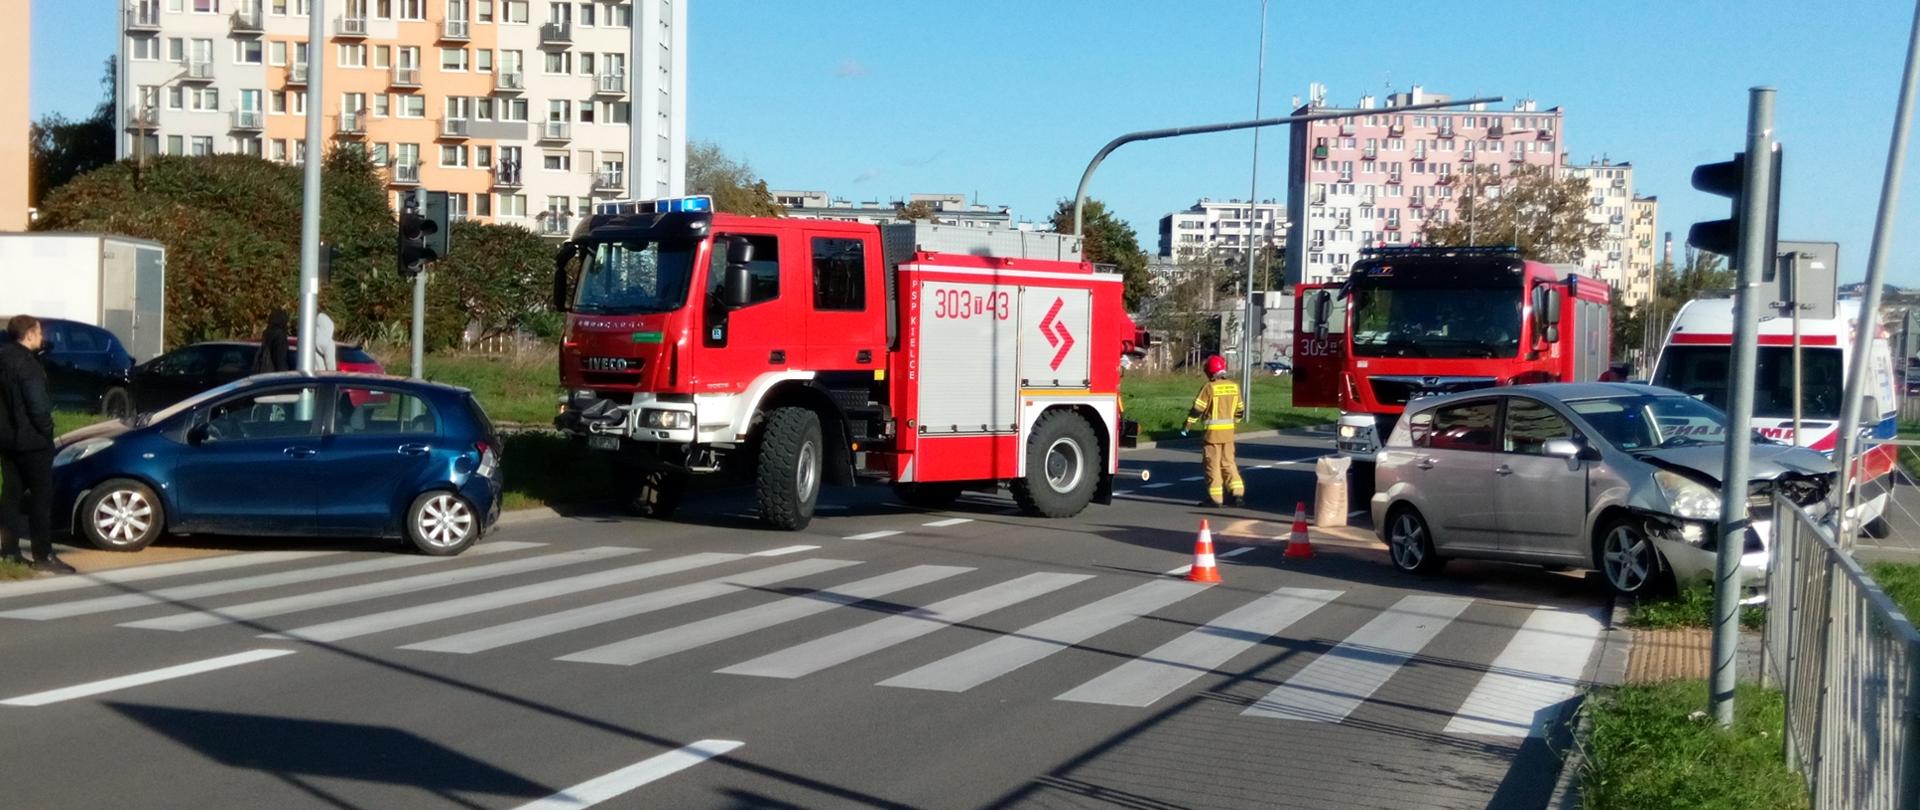 Zdjęcie przedstawia ulicę Grunwaldzką w Kielcach. Po dwóch stronach jezdni stoją auta biorące udział w zderzeniu. W głębi widać dwa samochody strażackie oraz ambulans. Między nimi przechodzi strażak, a na jezdni widać rozsypany sorbent zbierający wycieki. 